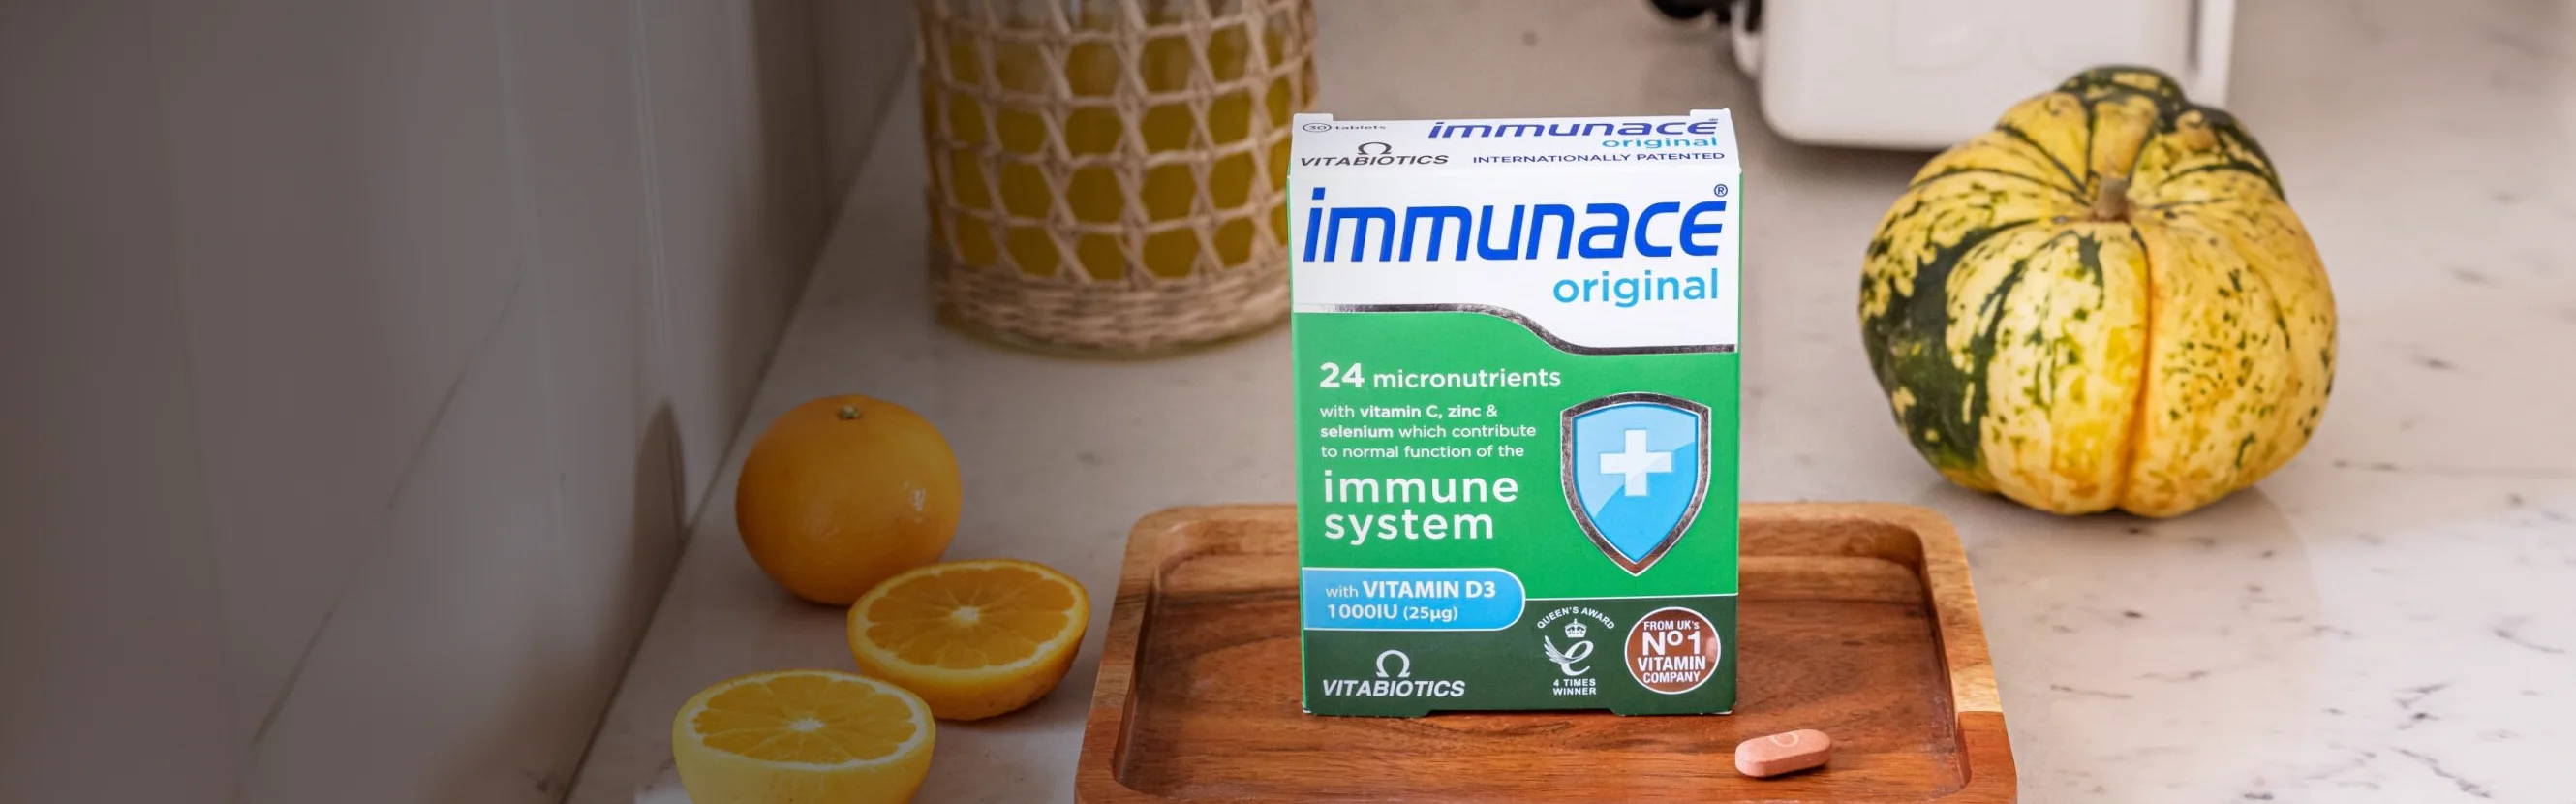  Immunace Original Next To Breakfast 